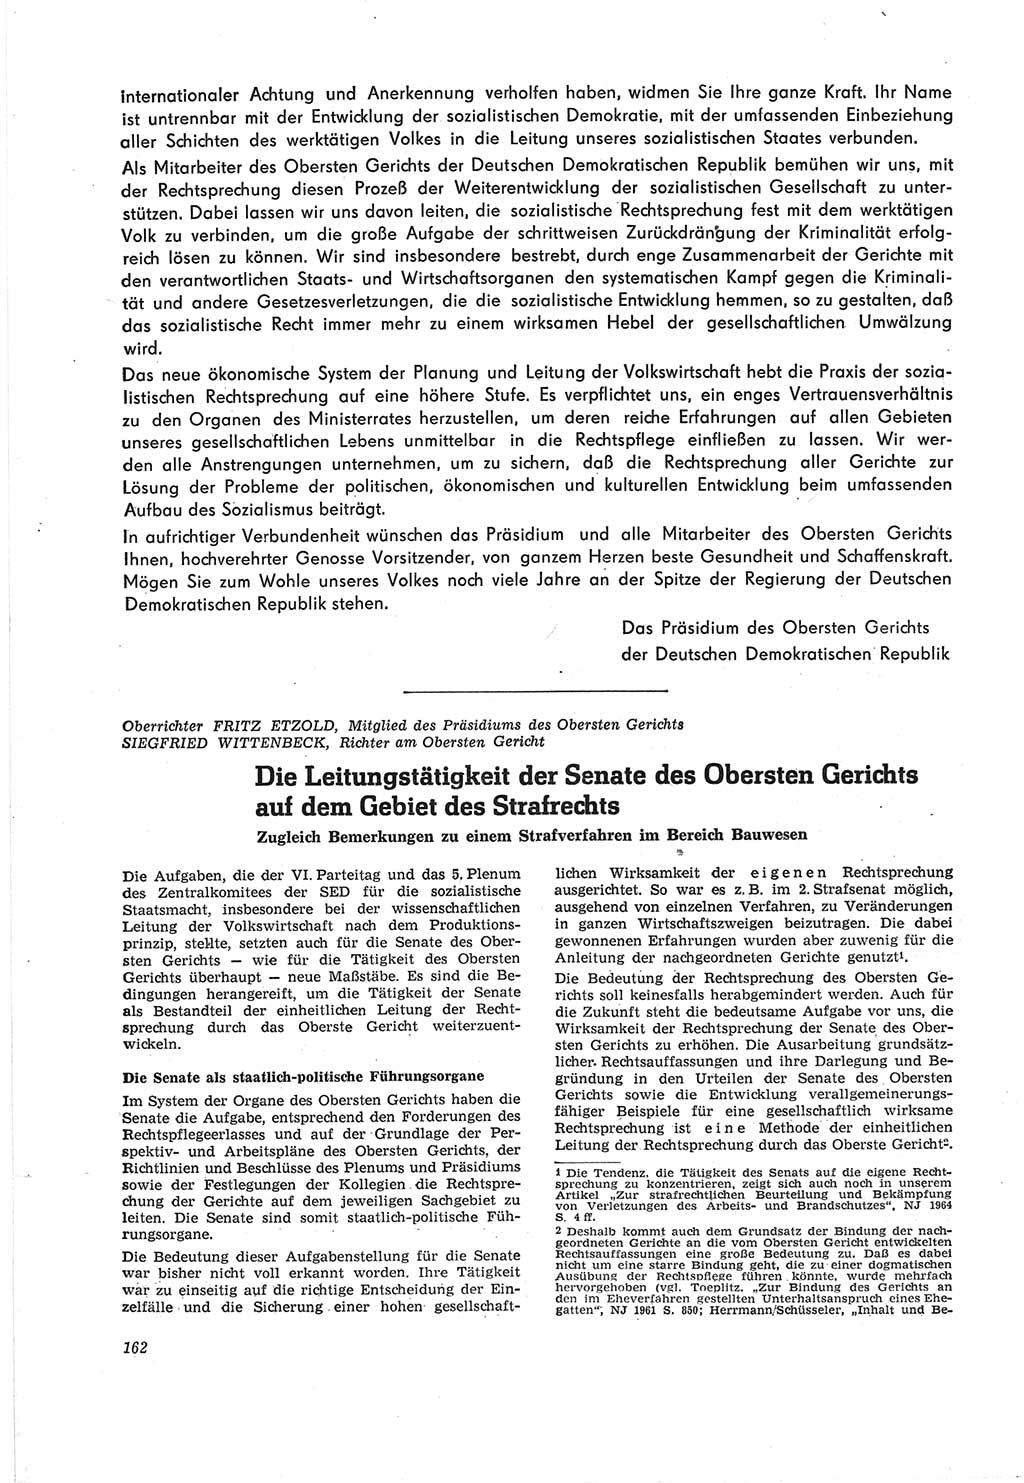 Neue Justiz (NJ), Zeitschrift für Recht und Rechtswissenschaft [Deutsche Demokratische Republik (DDR)], 18. Jahrgang 1964, Seite 162 (NJ DDR 1964, S. 162)